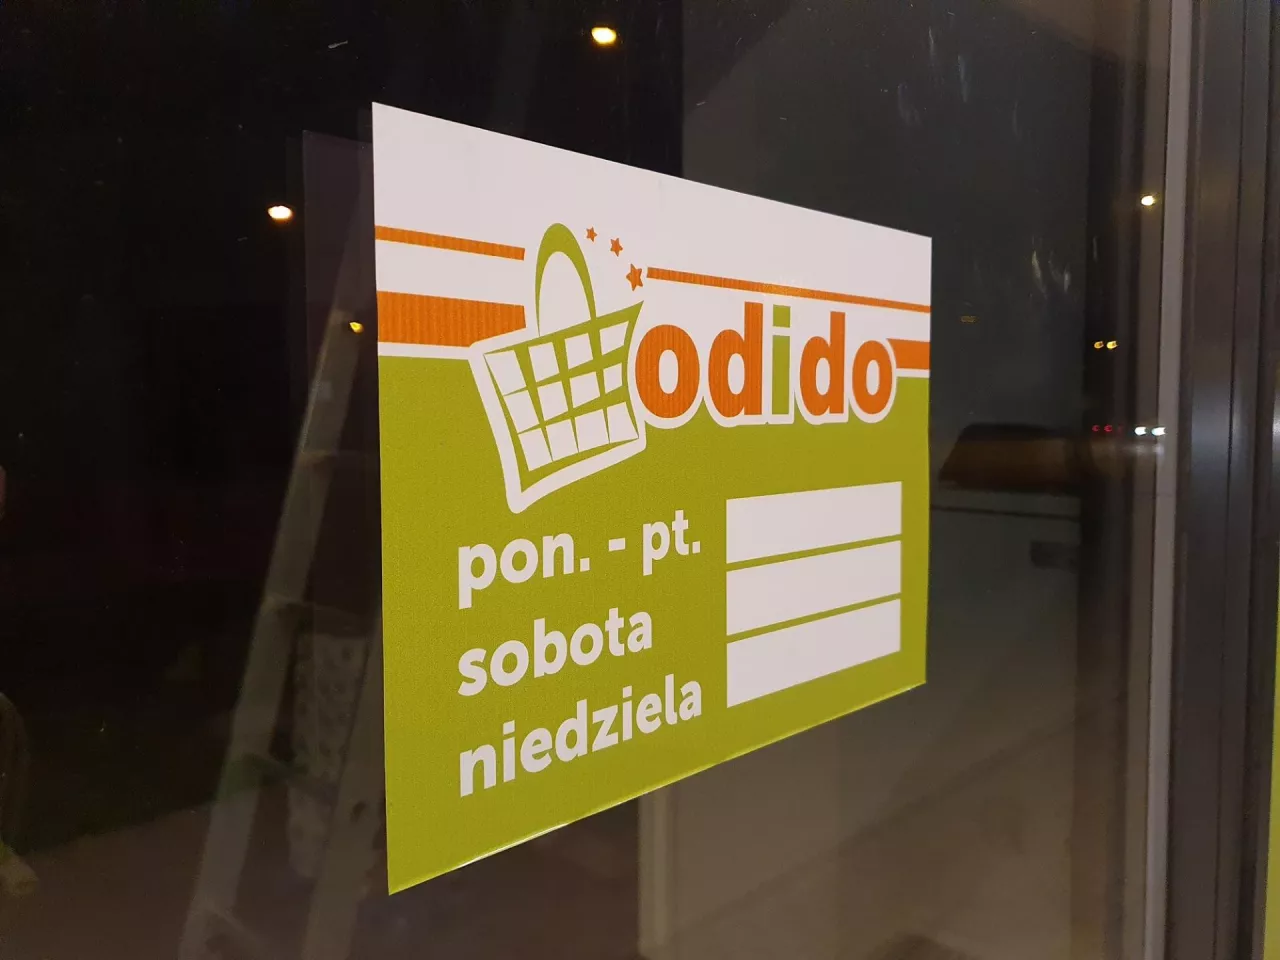 Odido to franczyzowa marka rozwijana przez Grupę Metro w Polsce (fot. wiadomoscihandlowe.pl)